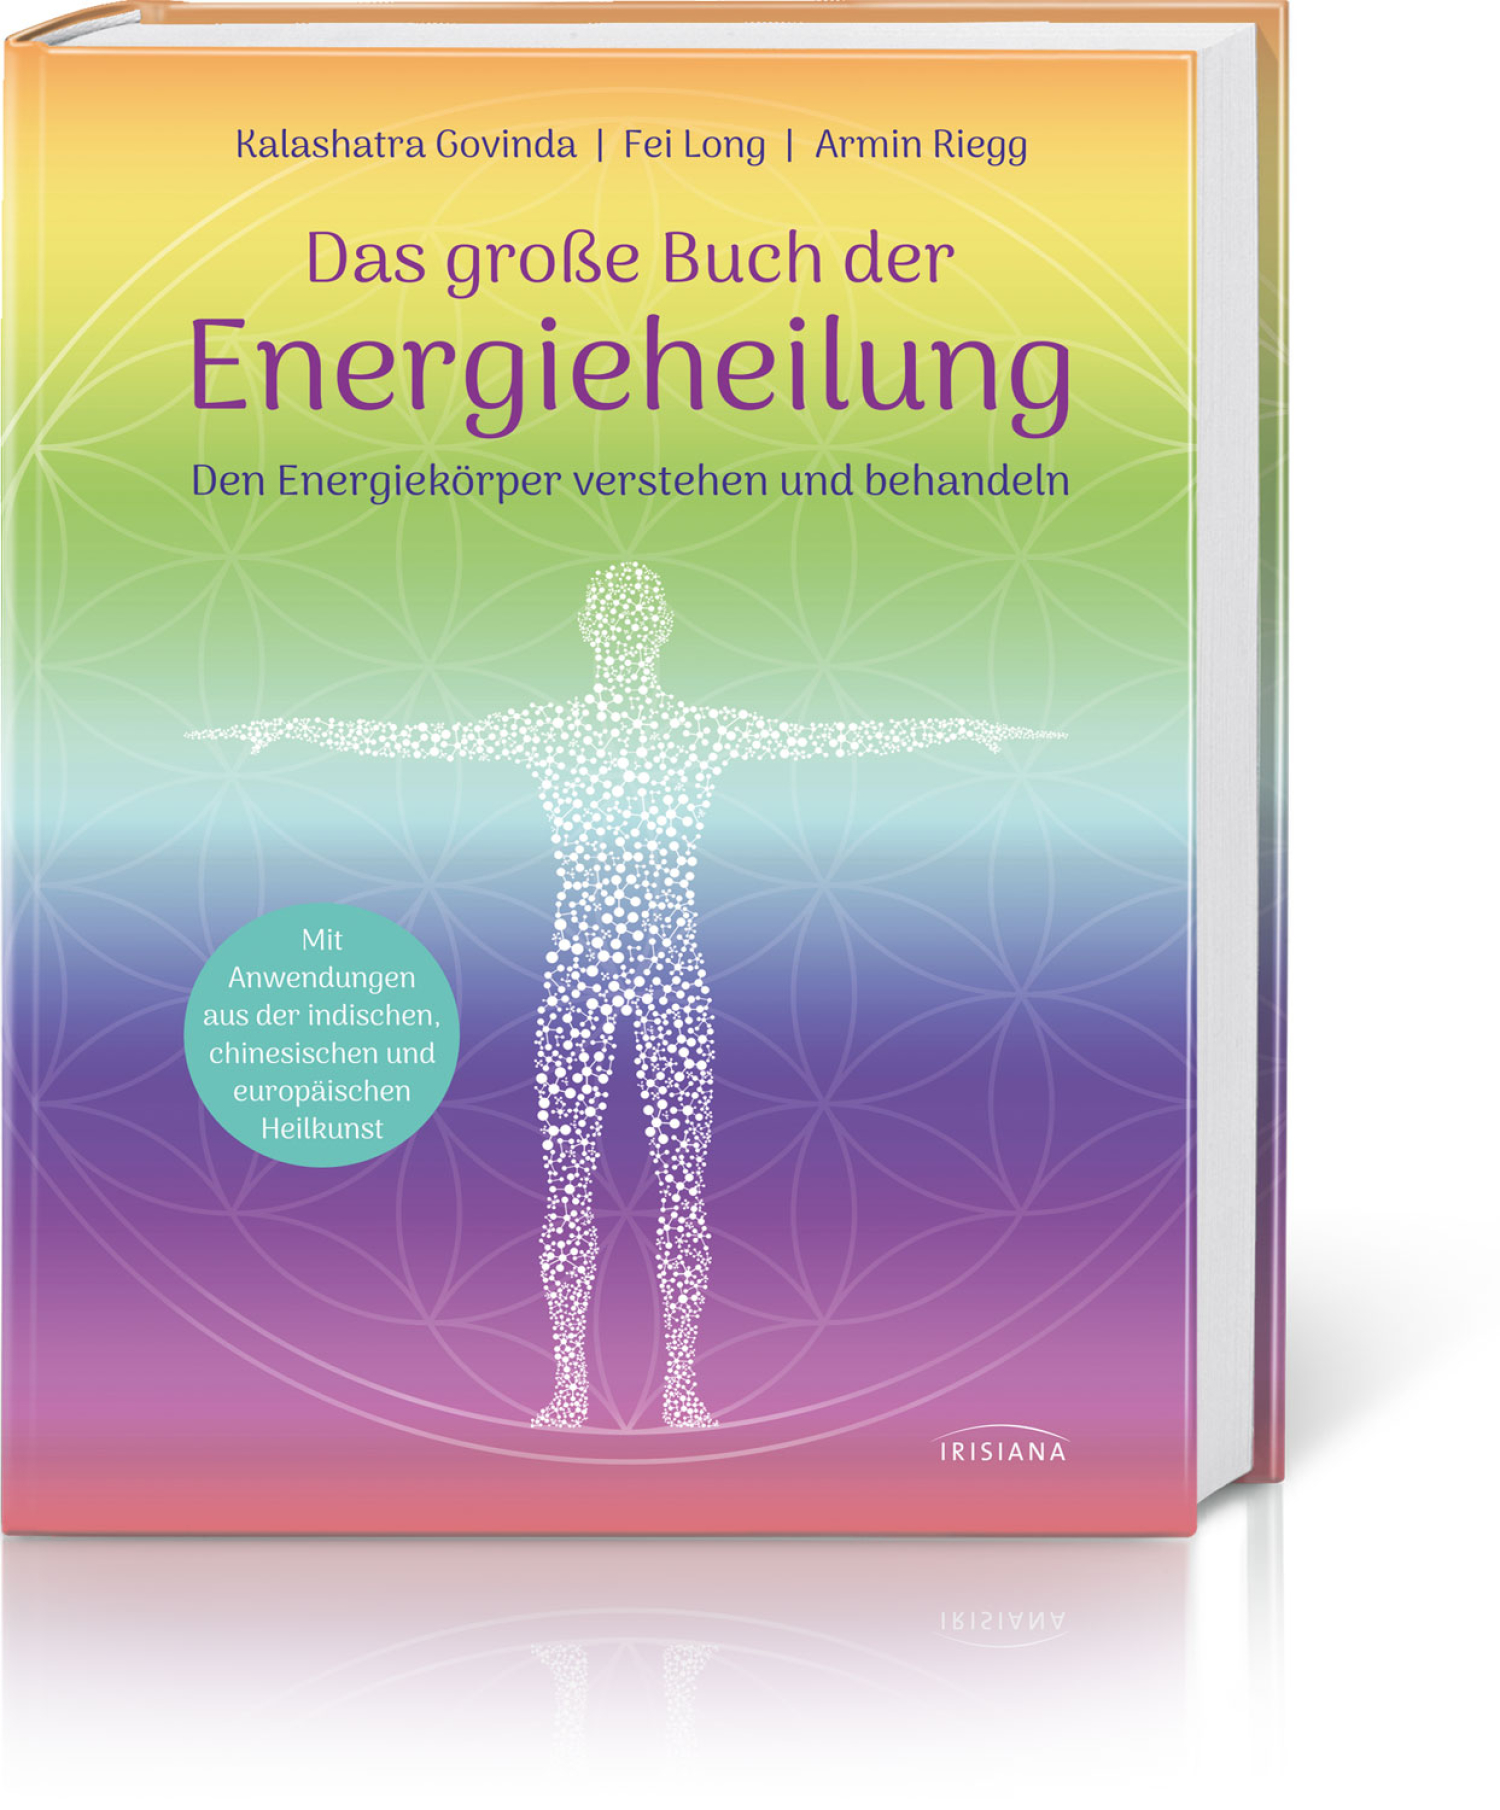 Das große Buch der Energieheilung, Produktbild 1